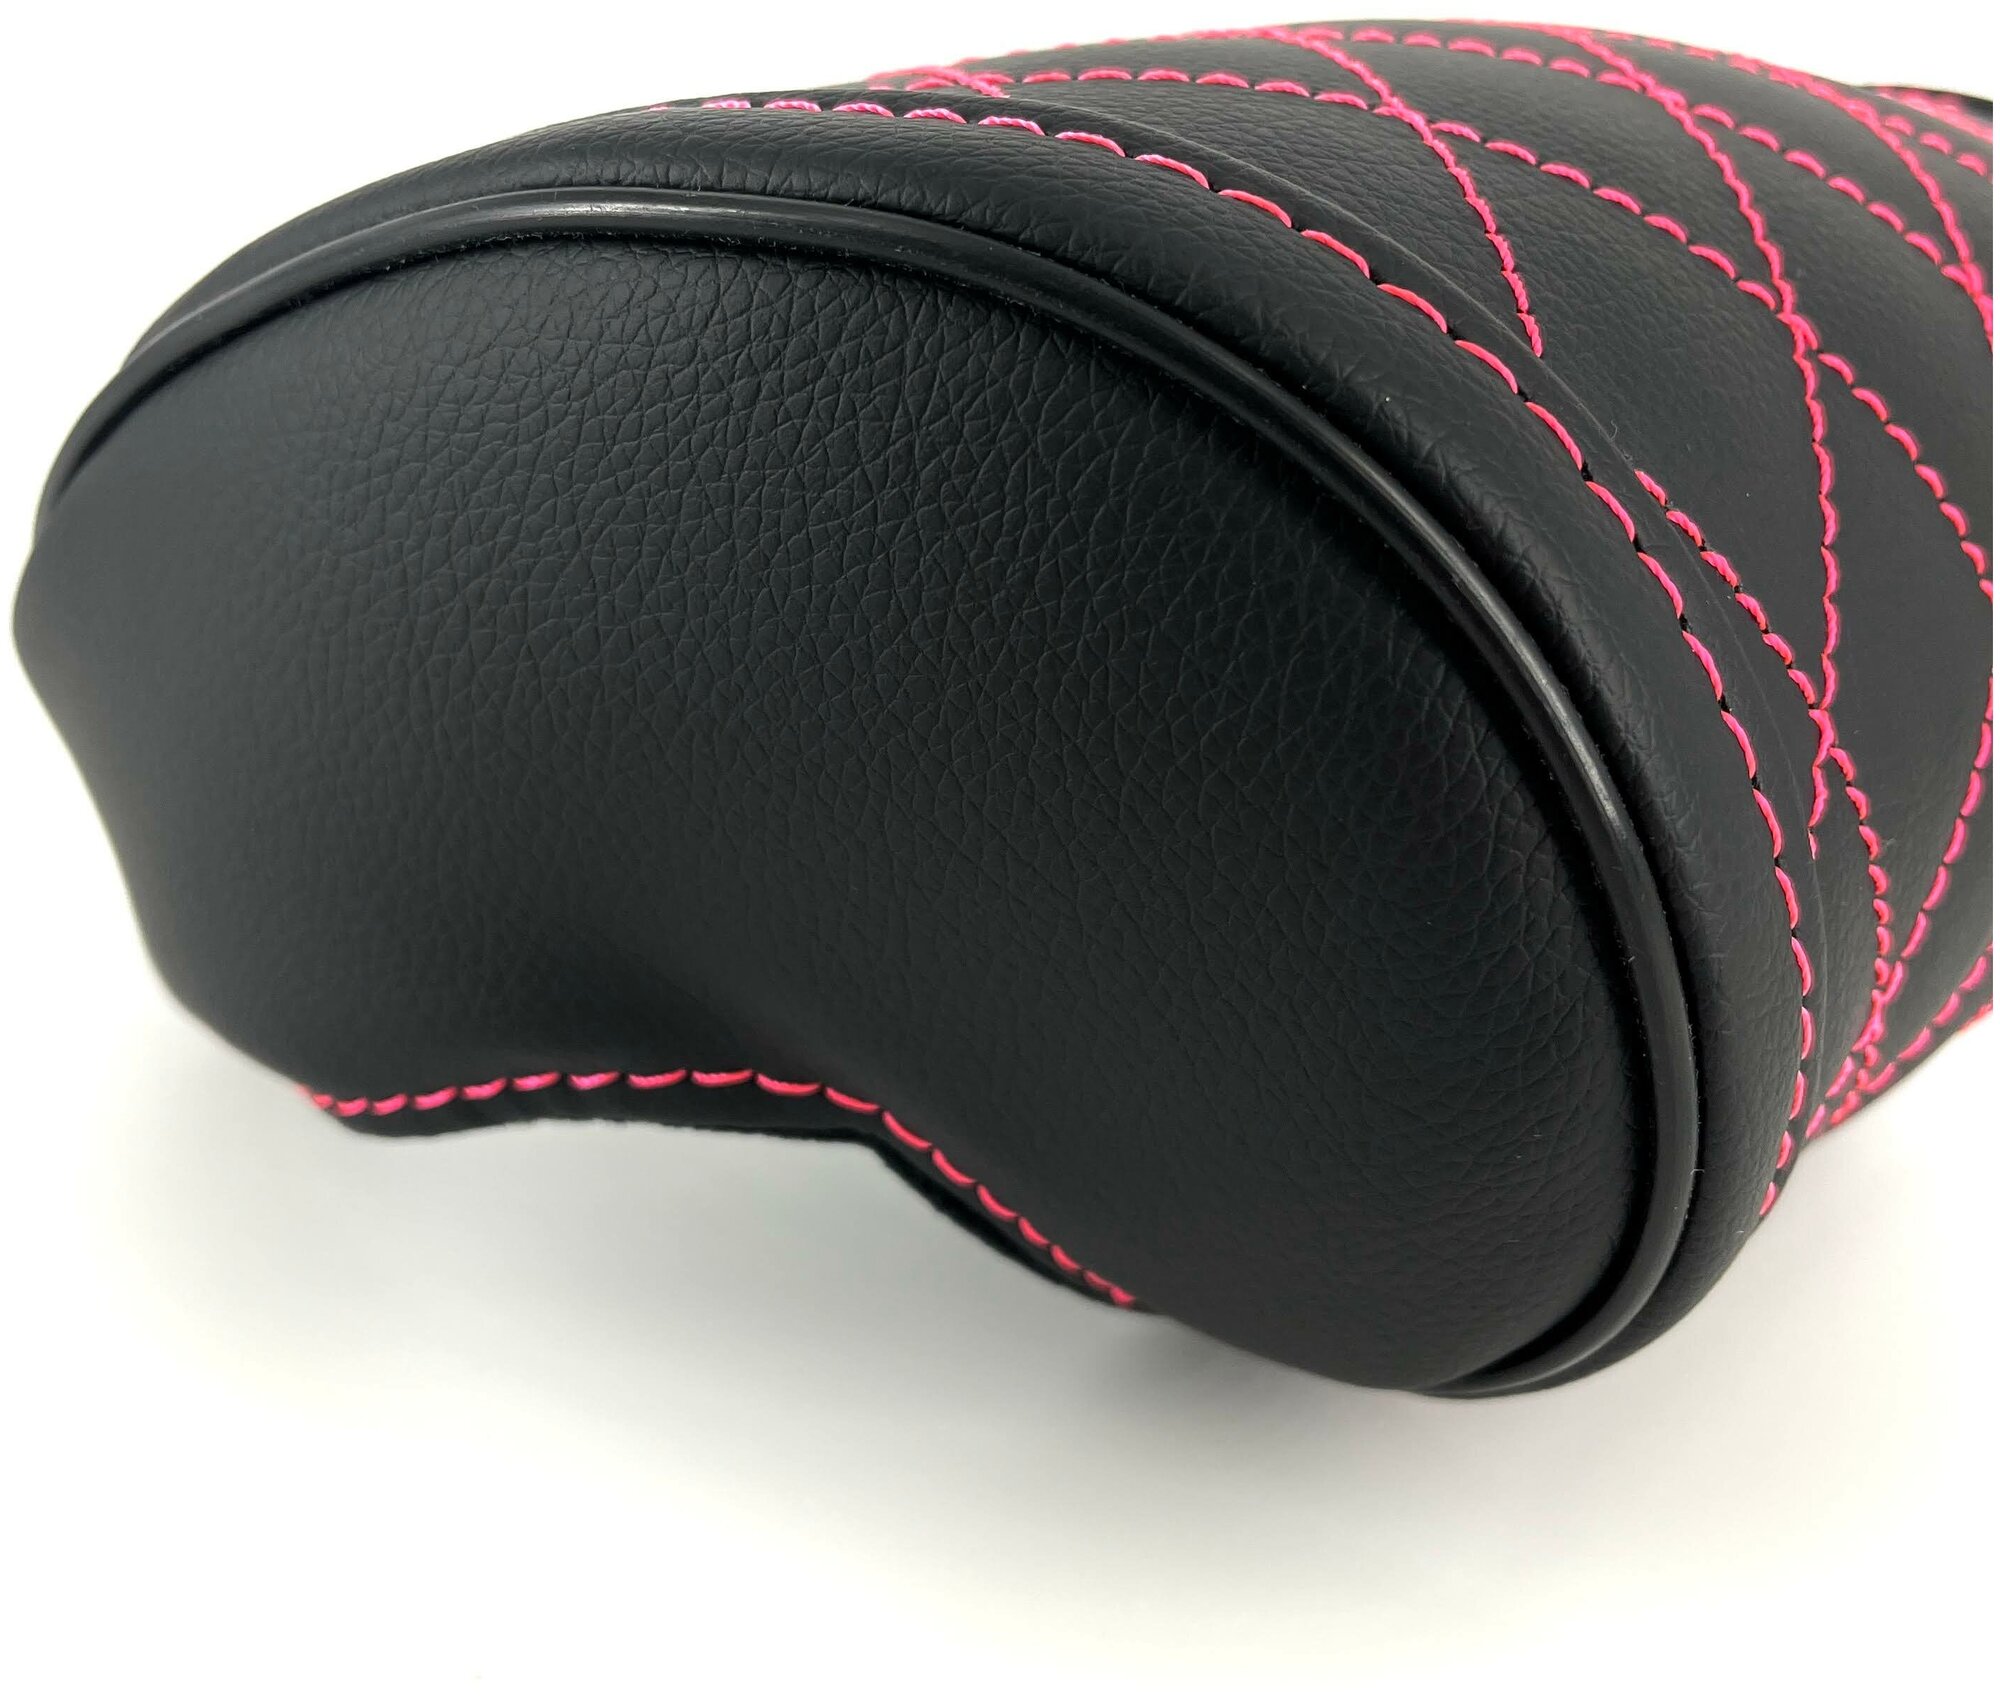 Черная автомобильная ортопедическая подушка для шеи на подголовник на сиденье с ромбами розового цвета Экокожа премиум класса